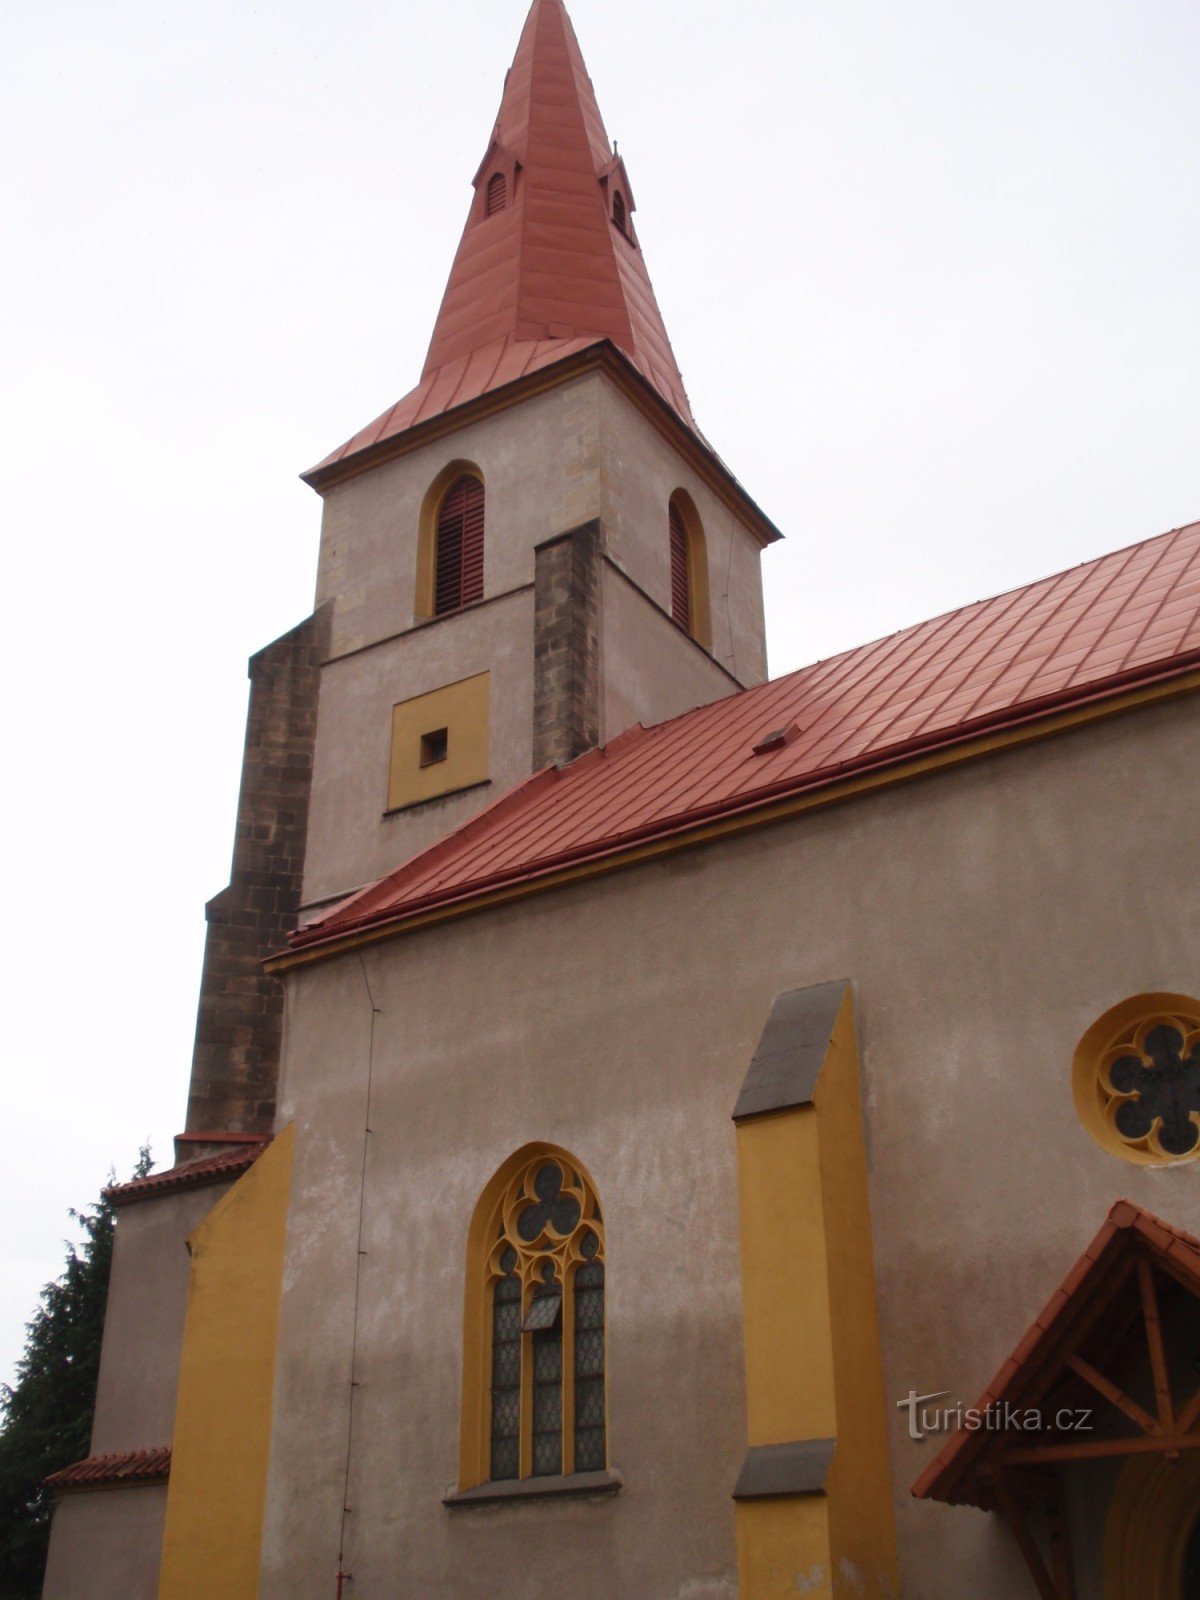 Monumentos de la iglesia de la ciudad de Chotěboře